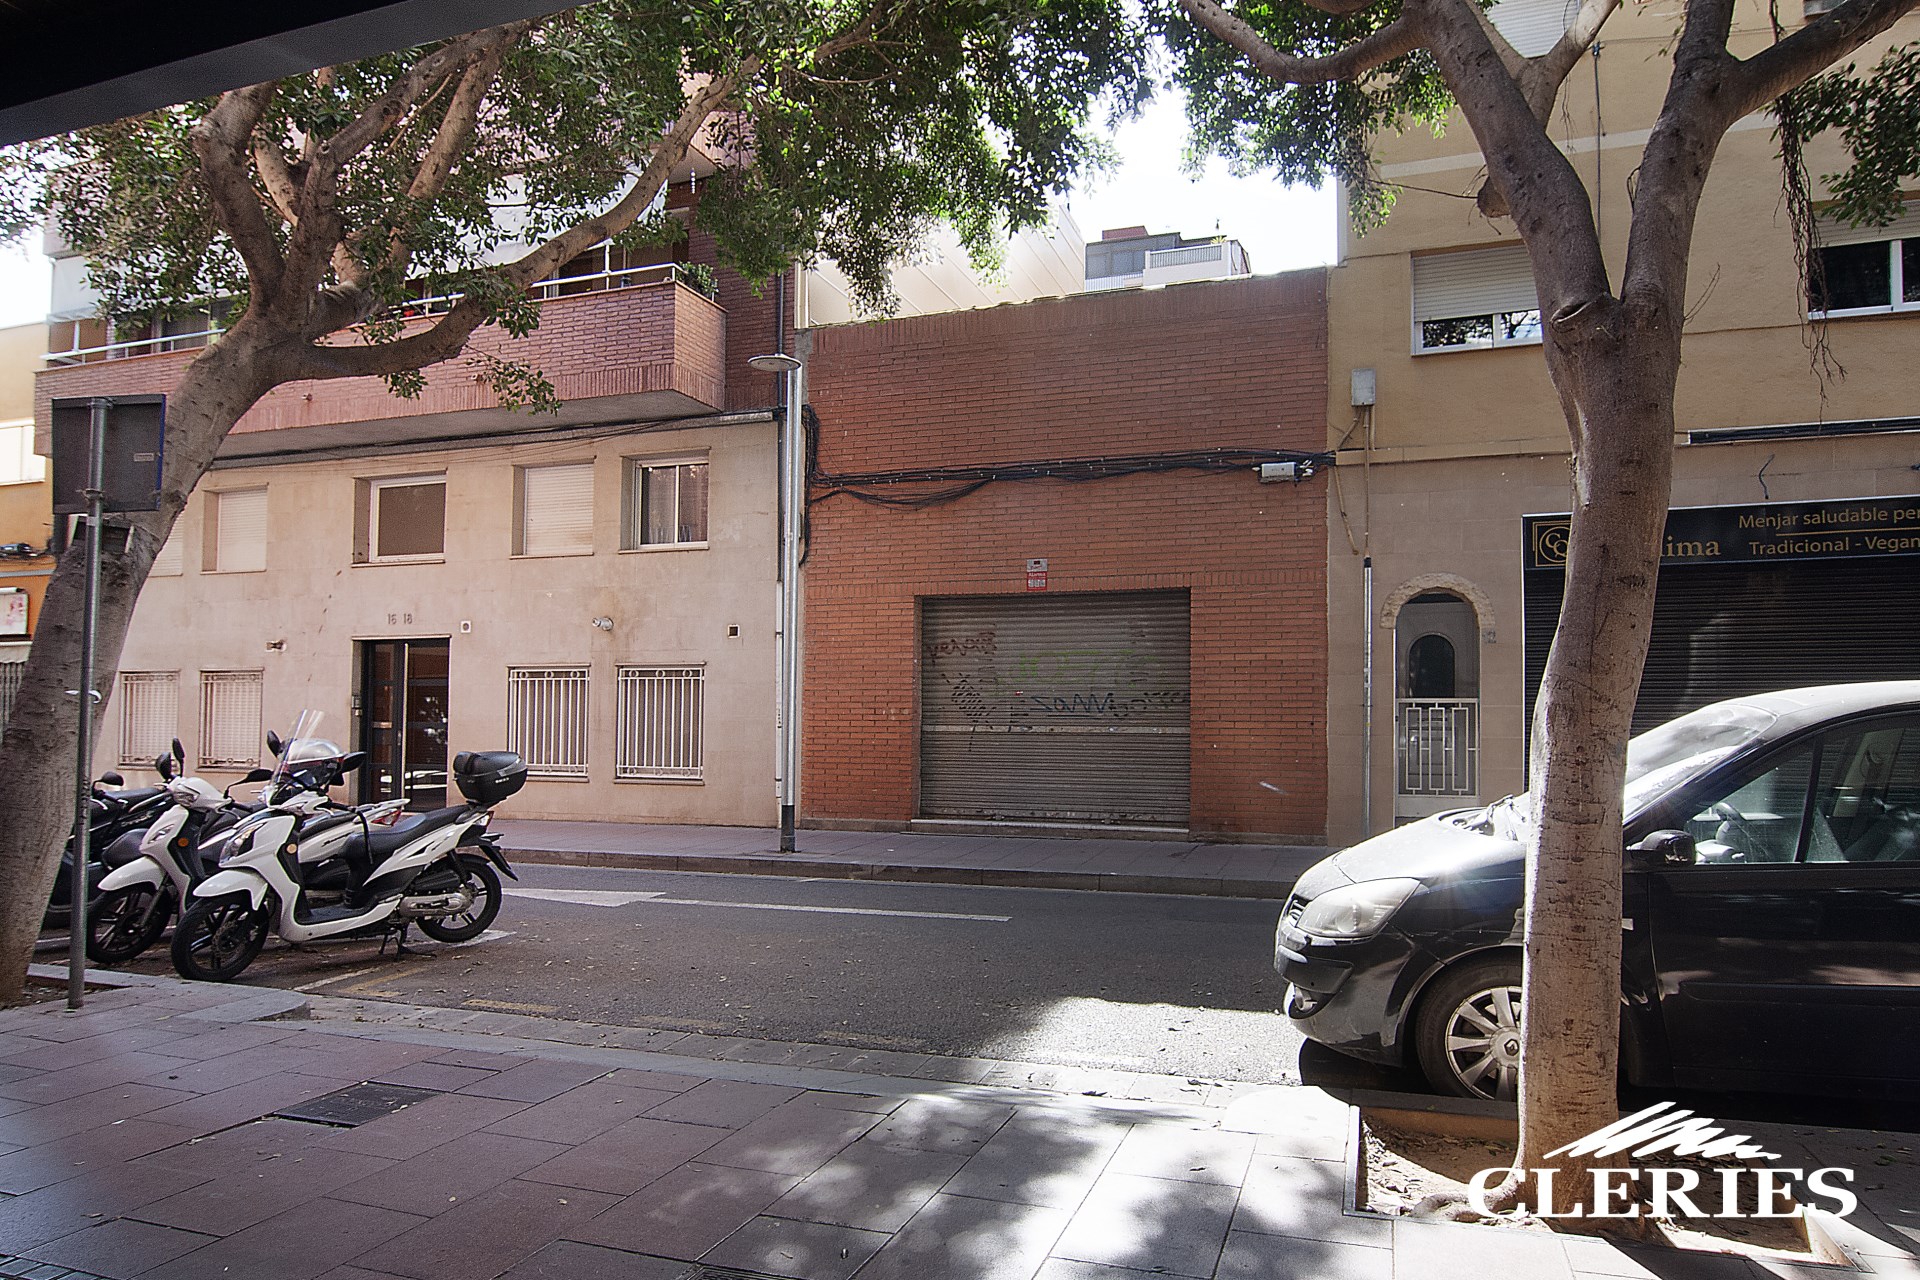 /RealEstateImages/6263/Local_Venta_Bon_Pastor_Barcelona_Cleries_07.jpg